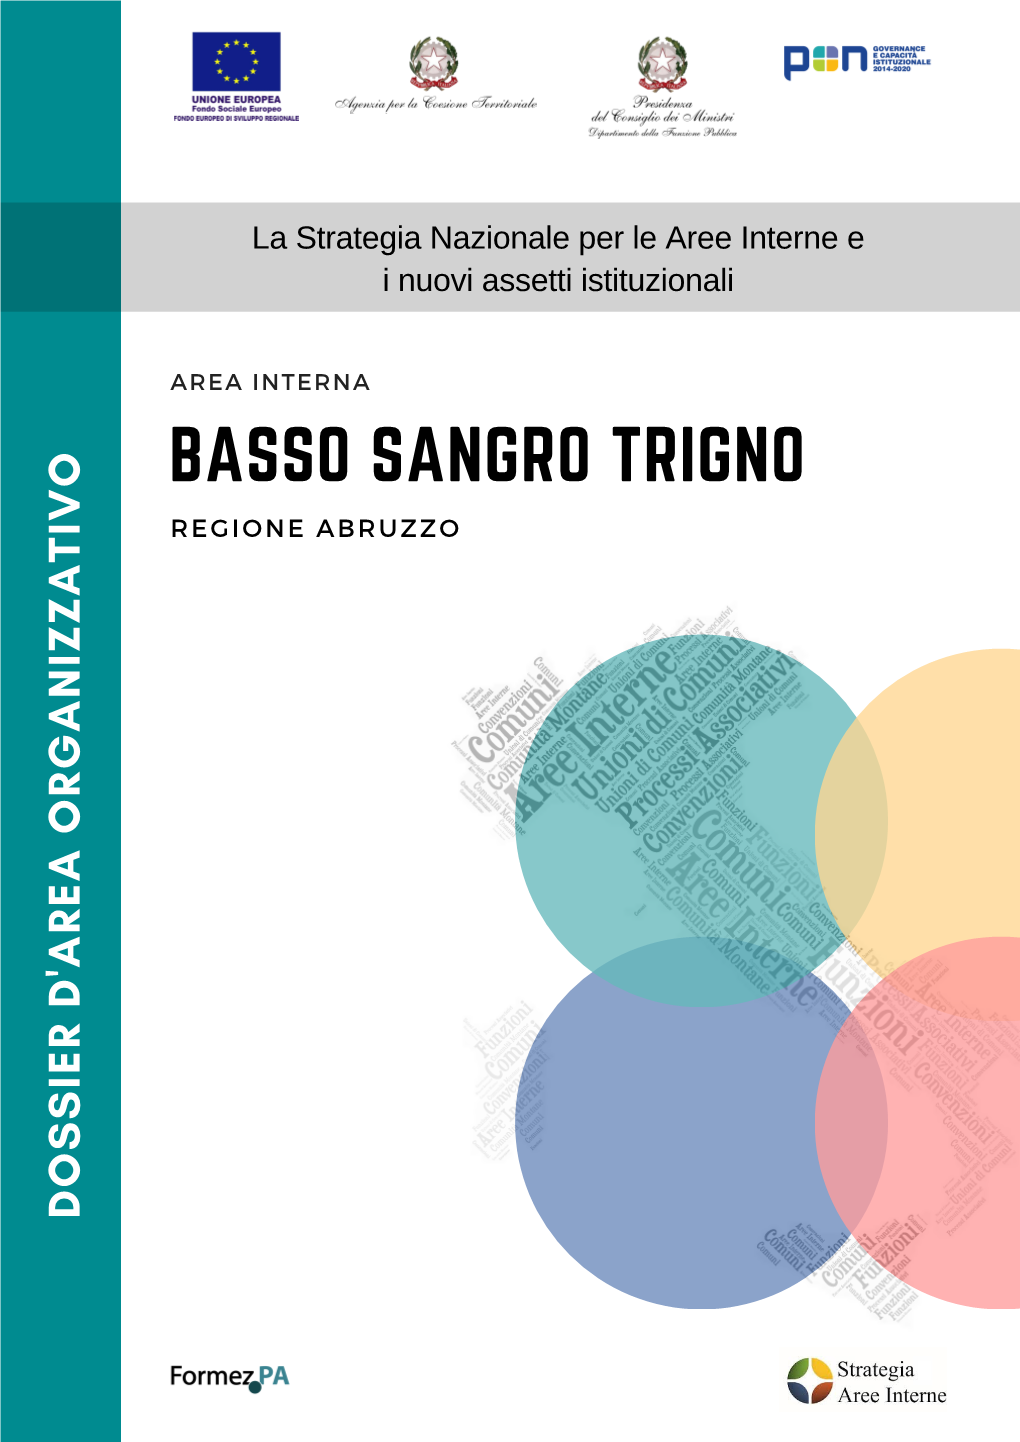 Dossier D'area Basso Sangro Trigno